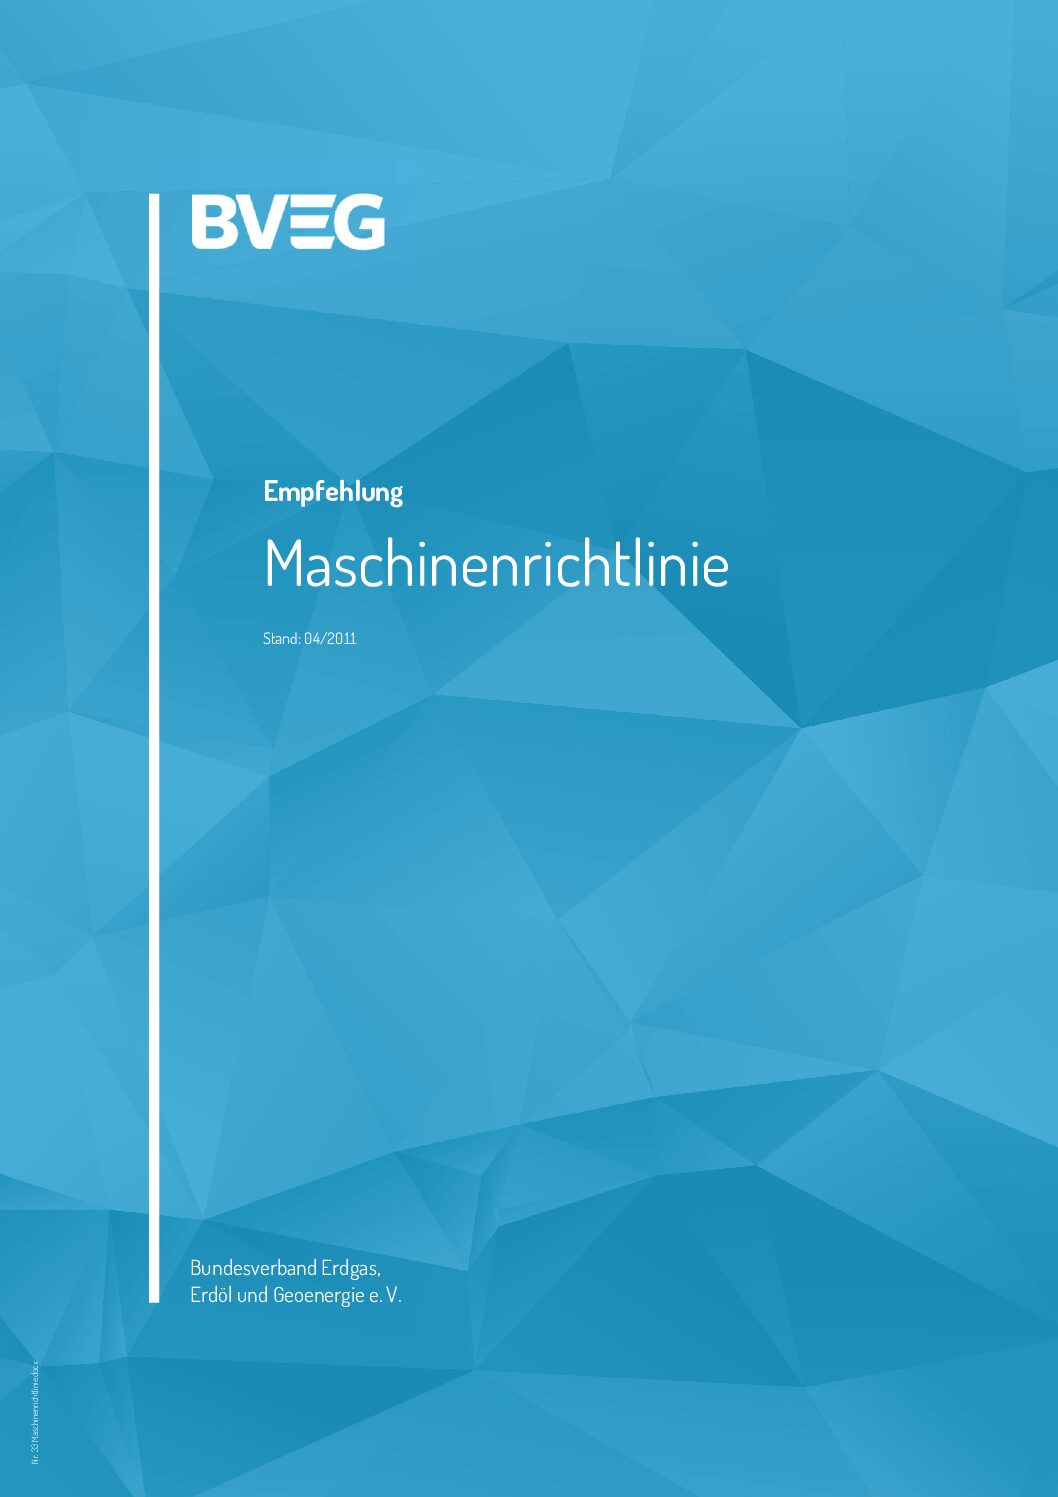 BVEG Empfehlung Maschinenrichtlinie